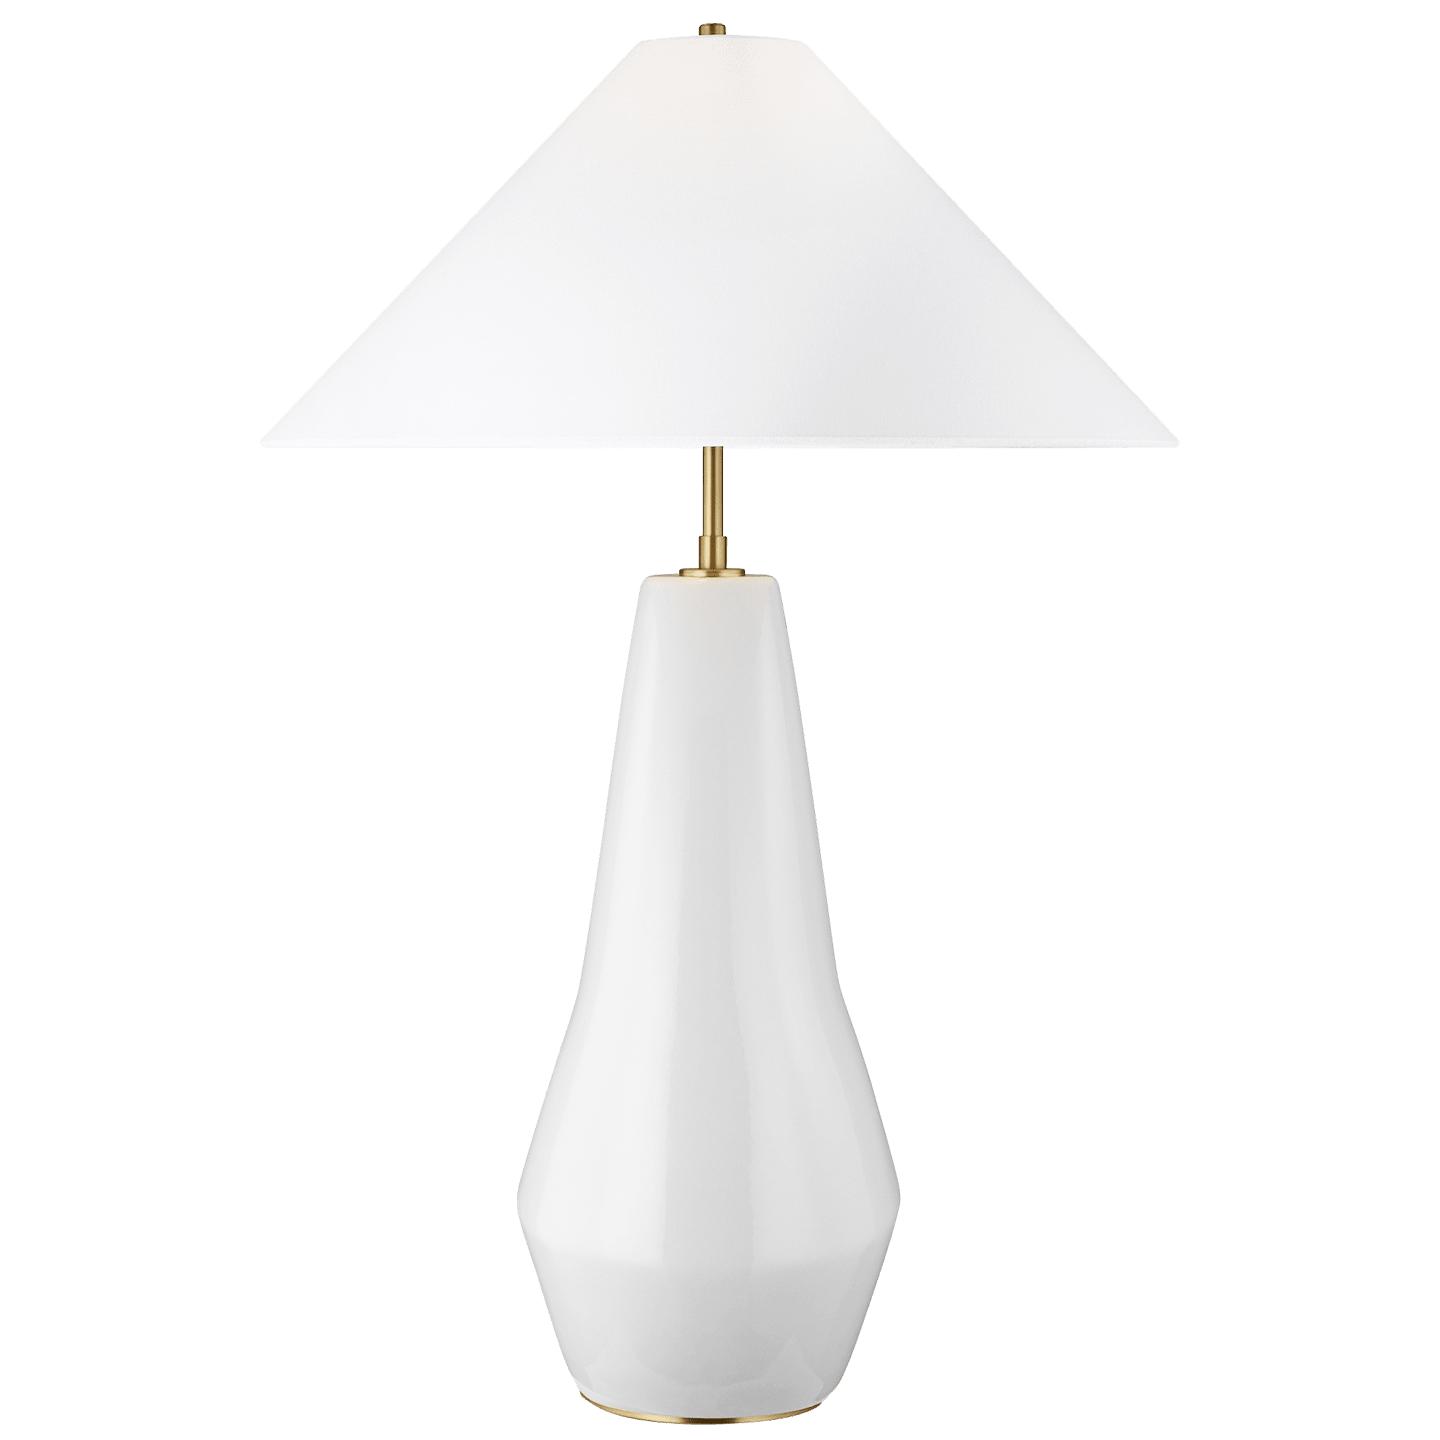 Купить Настольная лампа Contour Tall Table Lamp в интернет-магазине roooms.ru